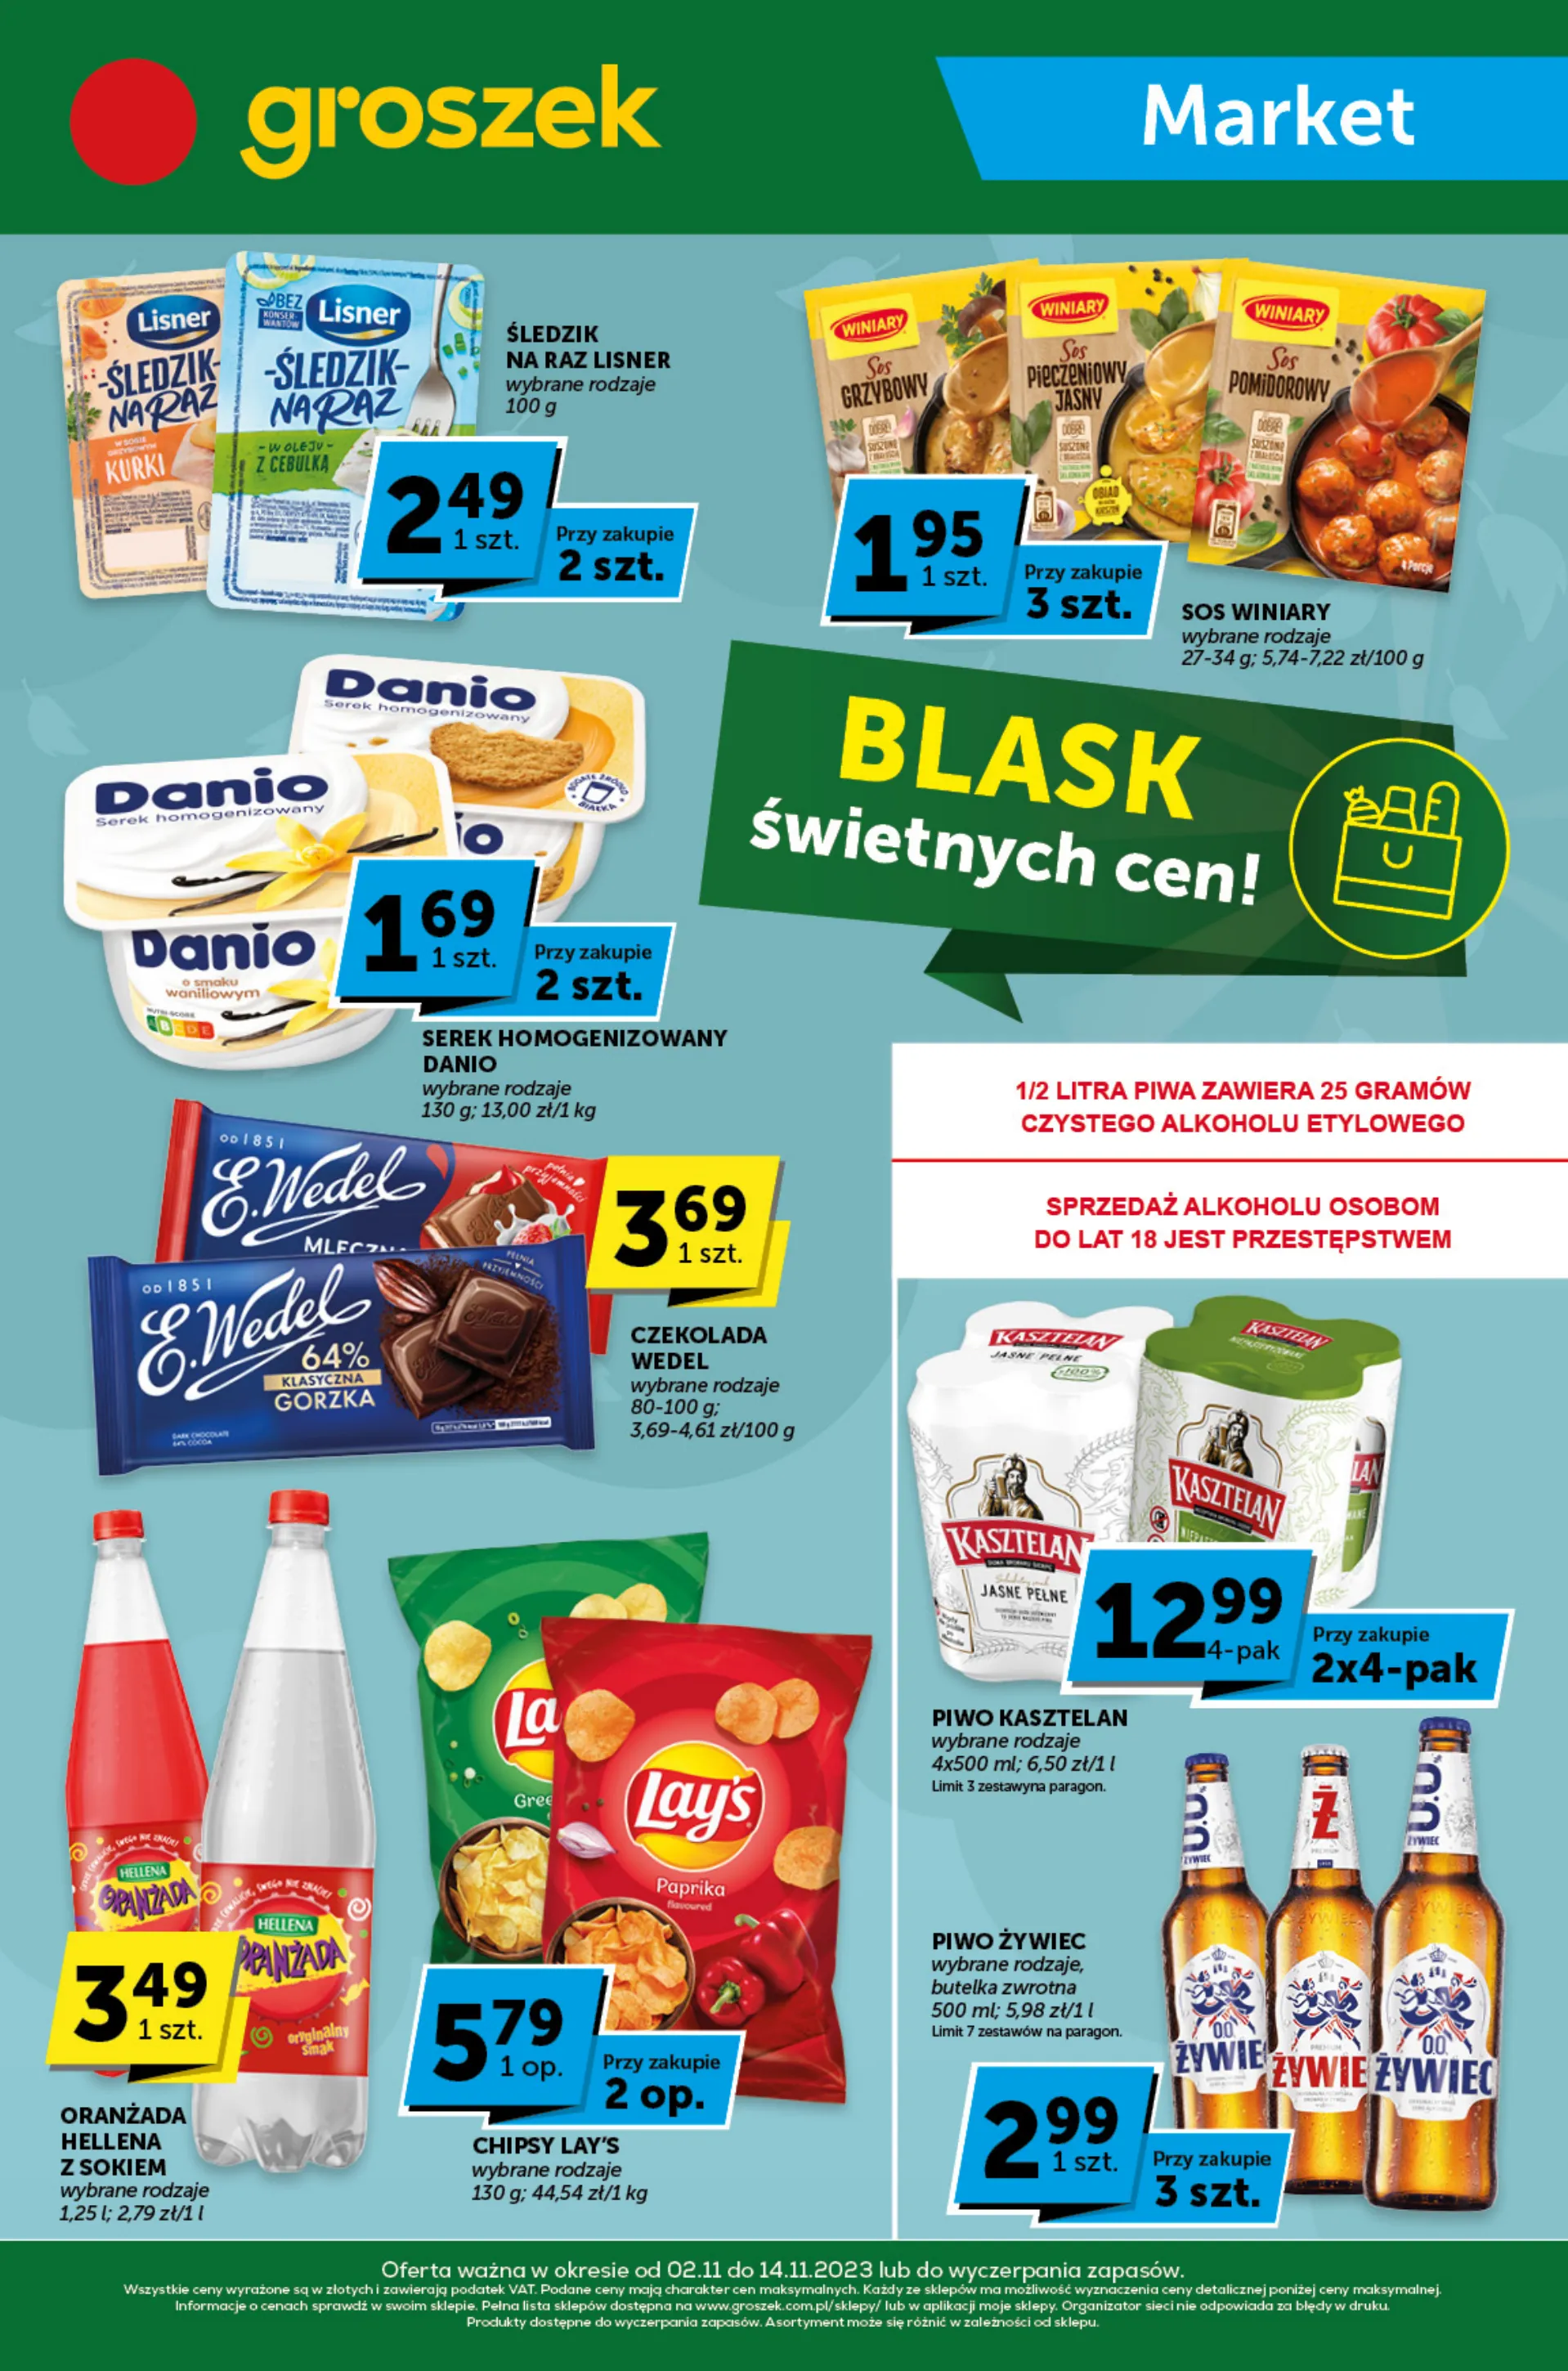 Groszek Market Blask świetny - Groszek Gazetka promocyjna - W tym tygodniu - oferta 'brak'